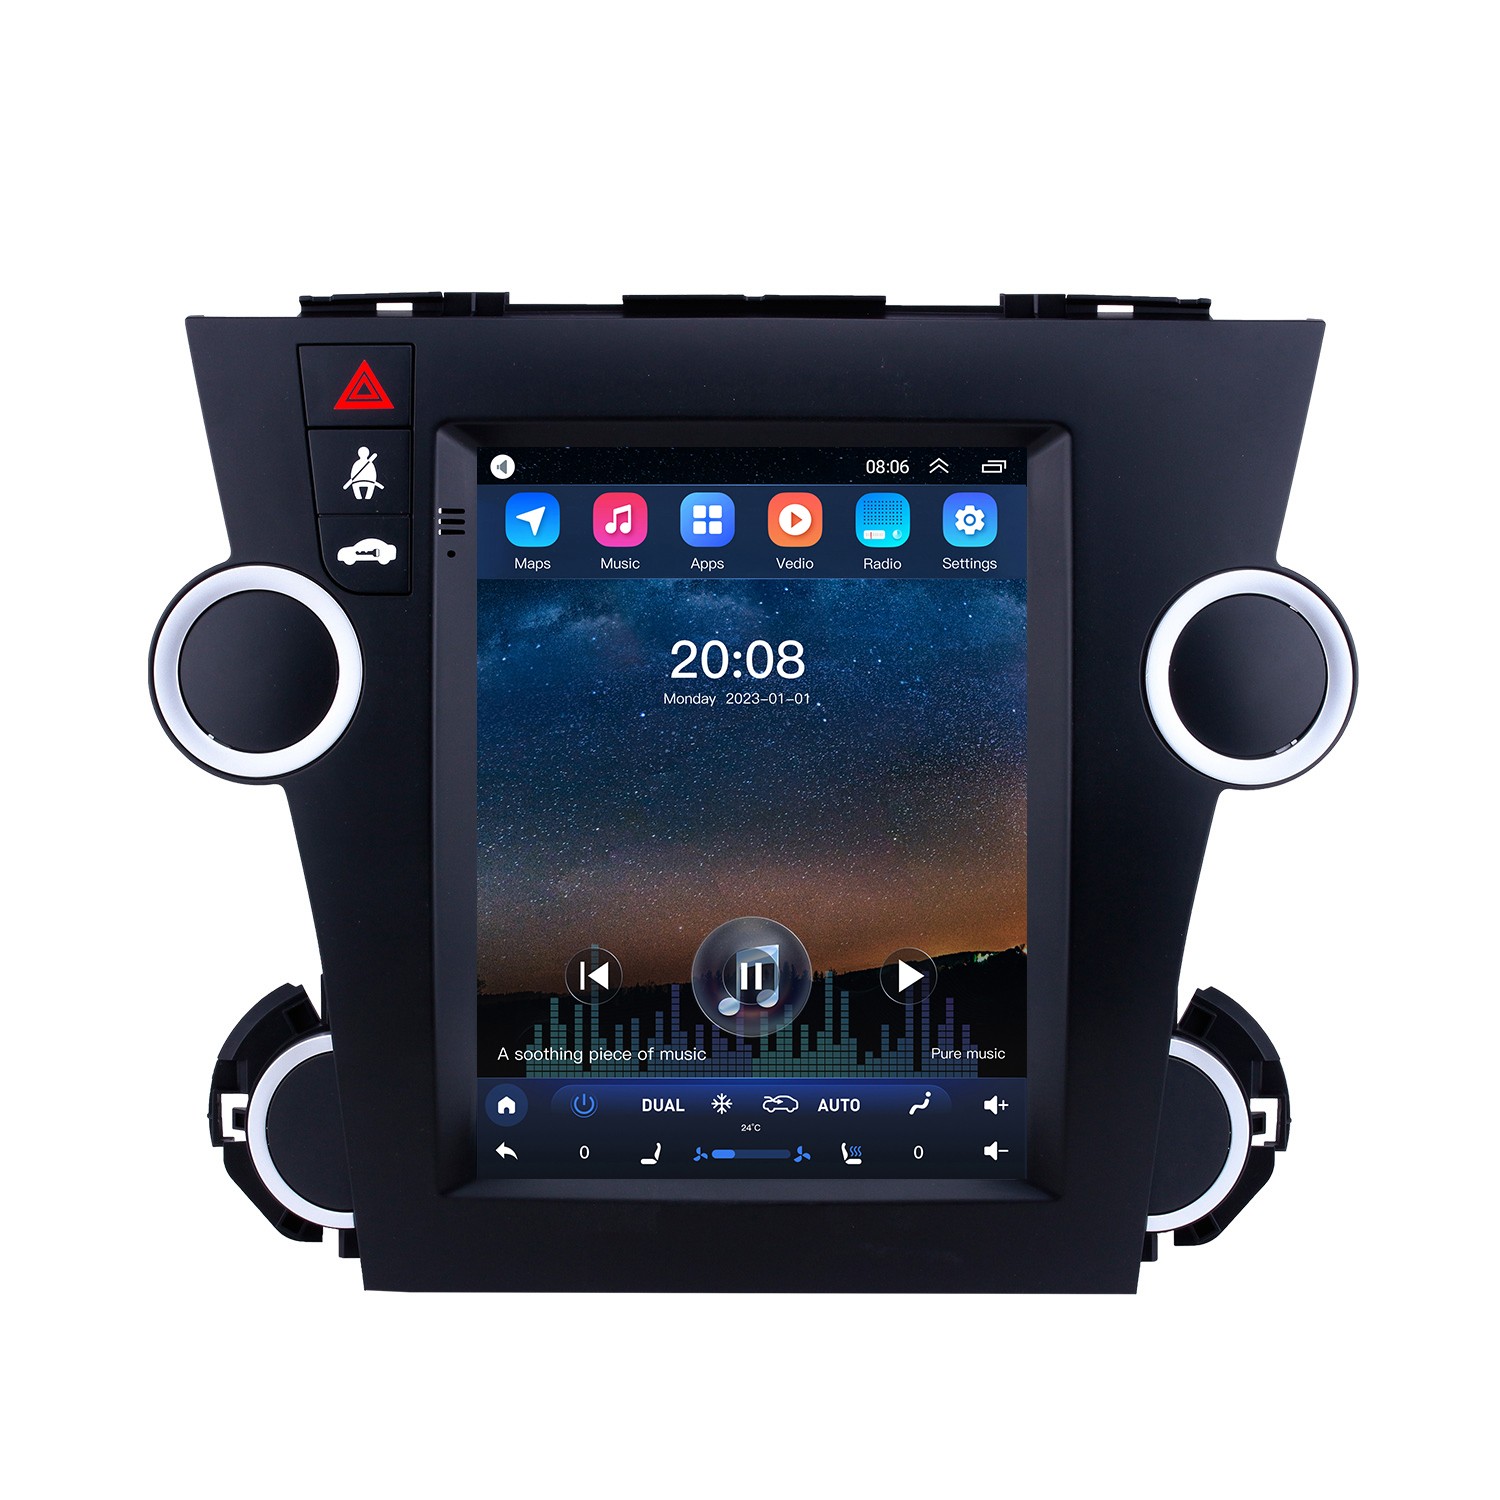 Autoradio 2 din android pour Peugeot 3008 avec 4 core 2g ram navi